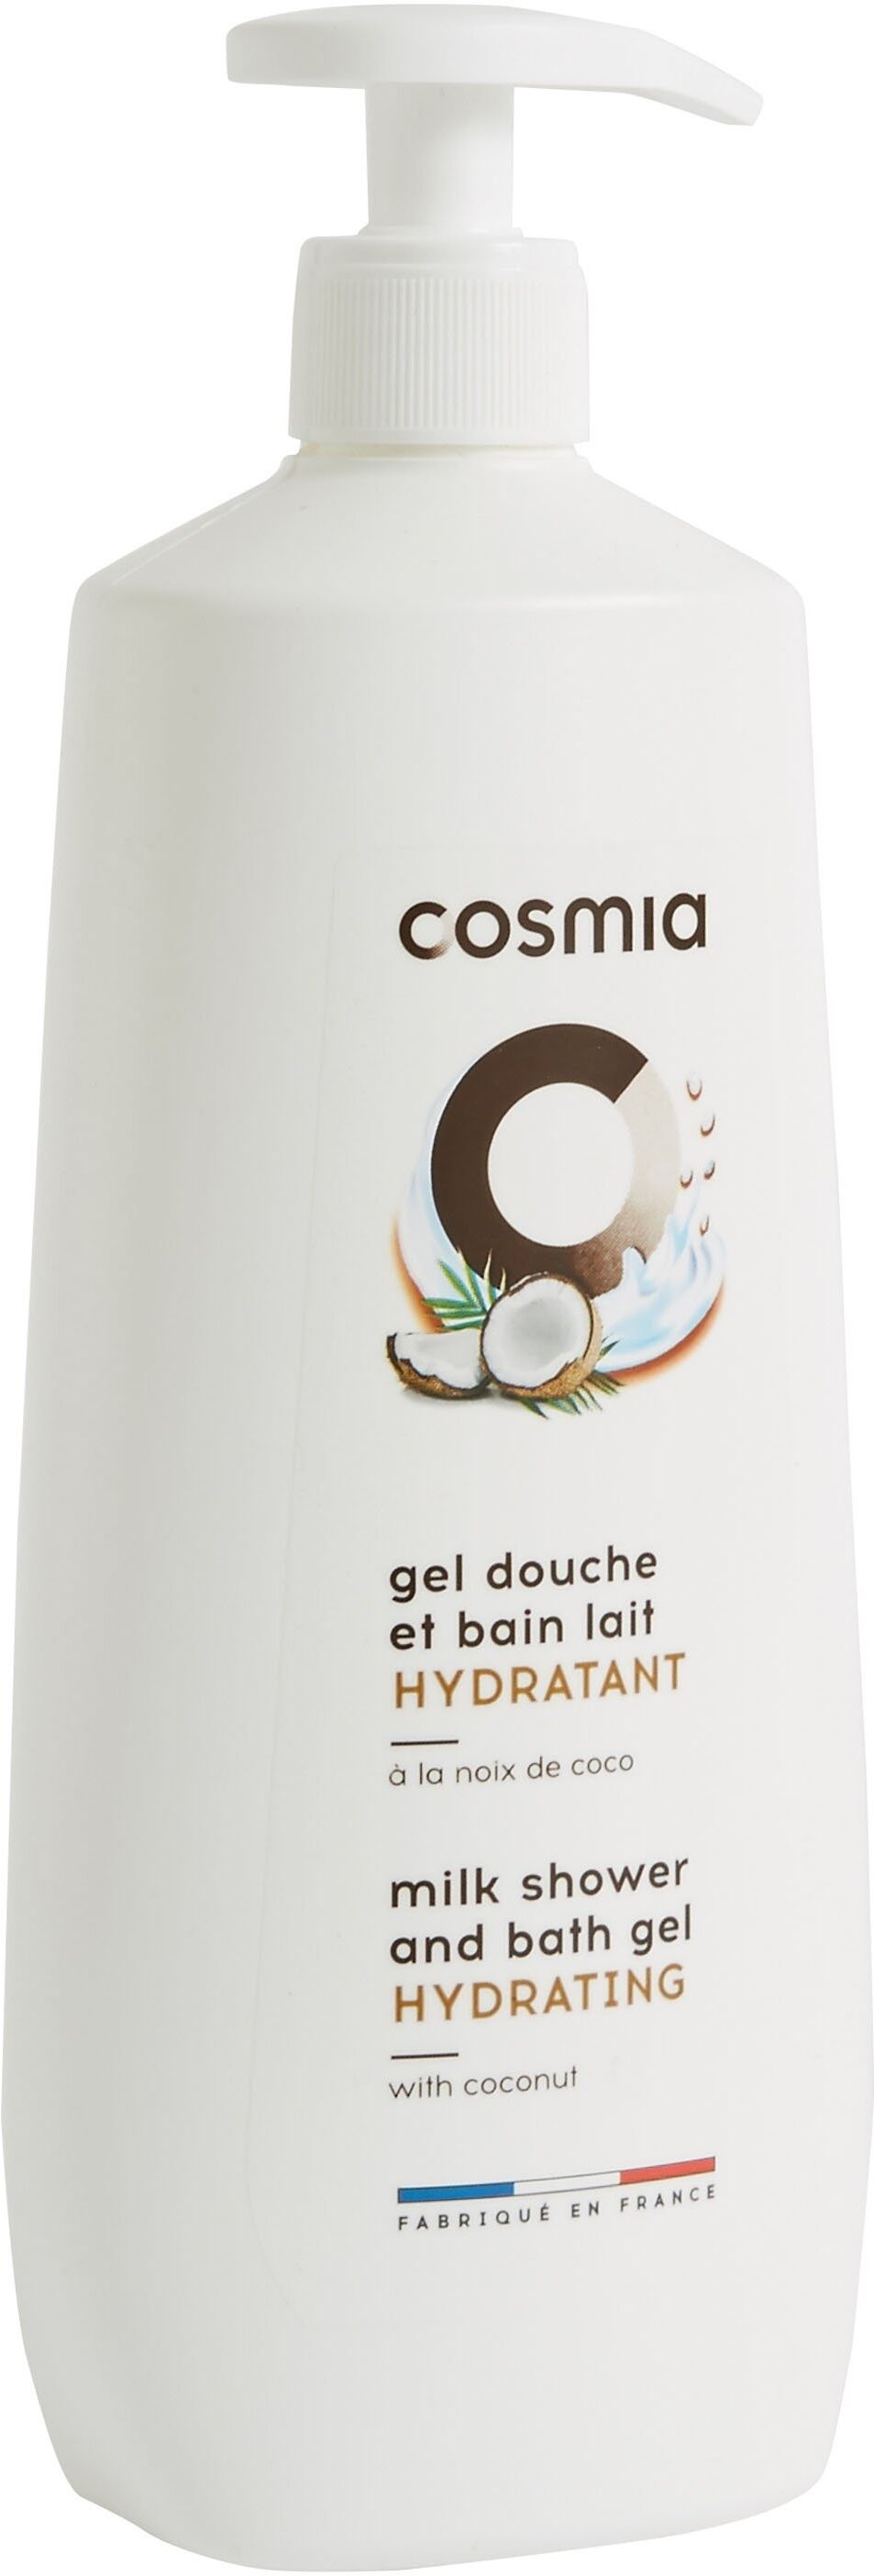 Cosmia gel douche et bain lait hydratant a la noix de coco - Product - en